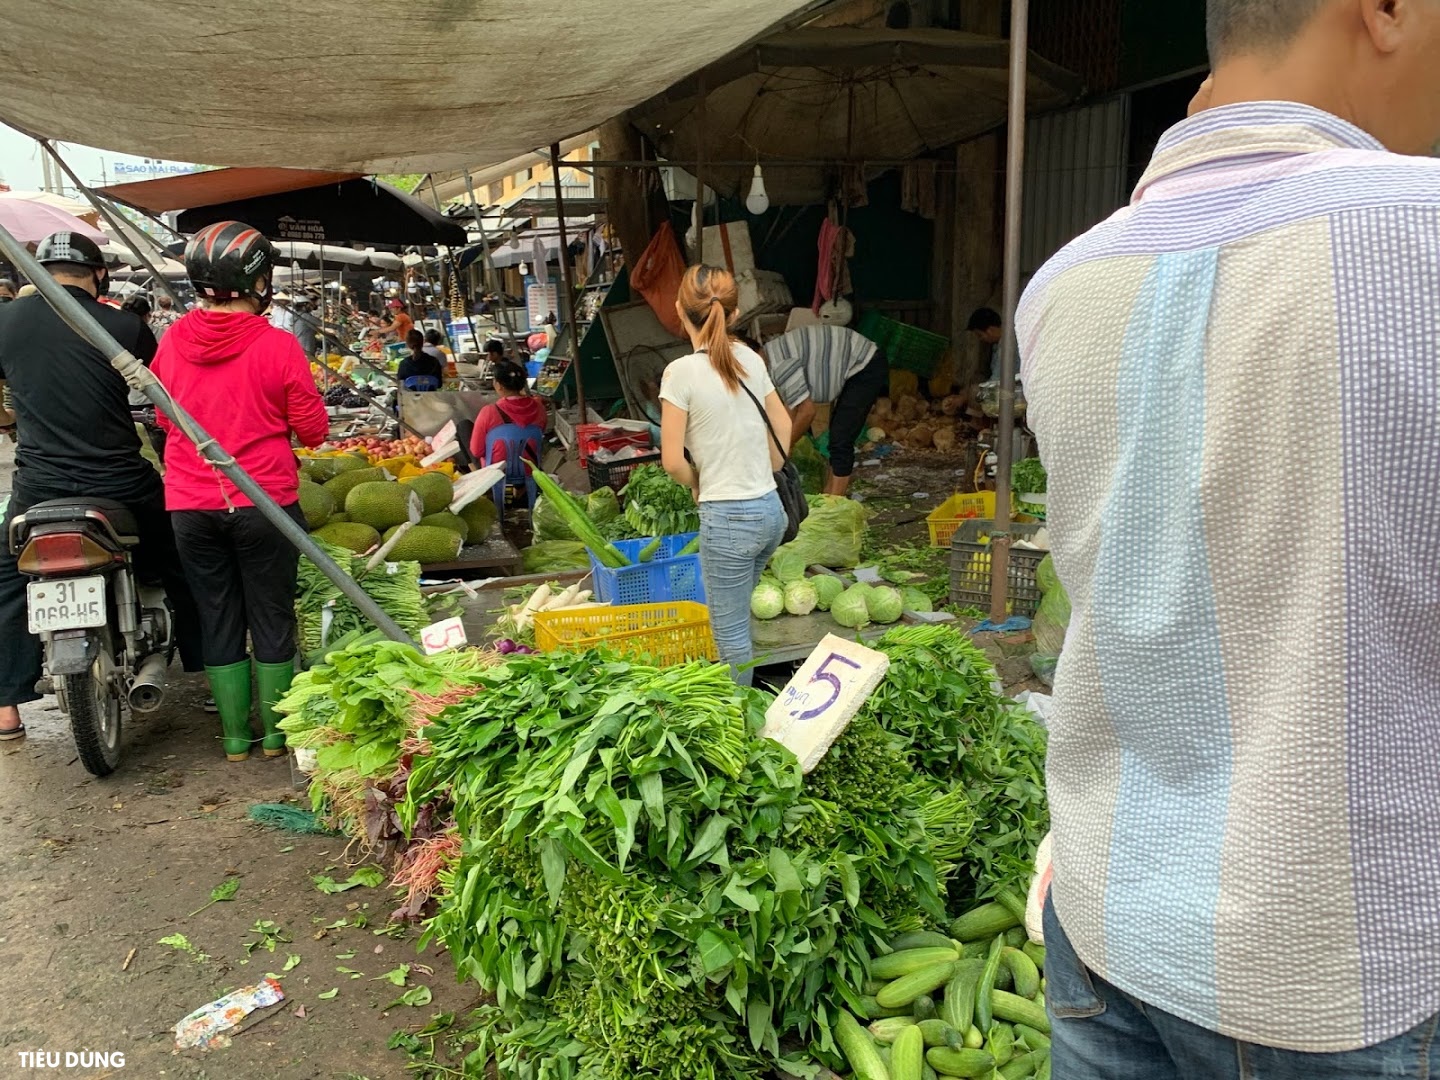 Đi chợ mấy ngày này cực đã, bà nội trợ cầm 10.000 đồng đủ rau xanh ăn cả ngày cho gia đình - Ảnh 7.